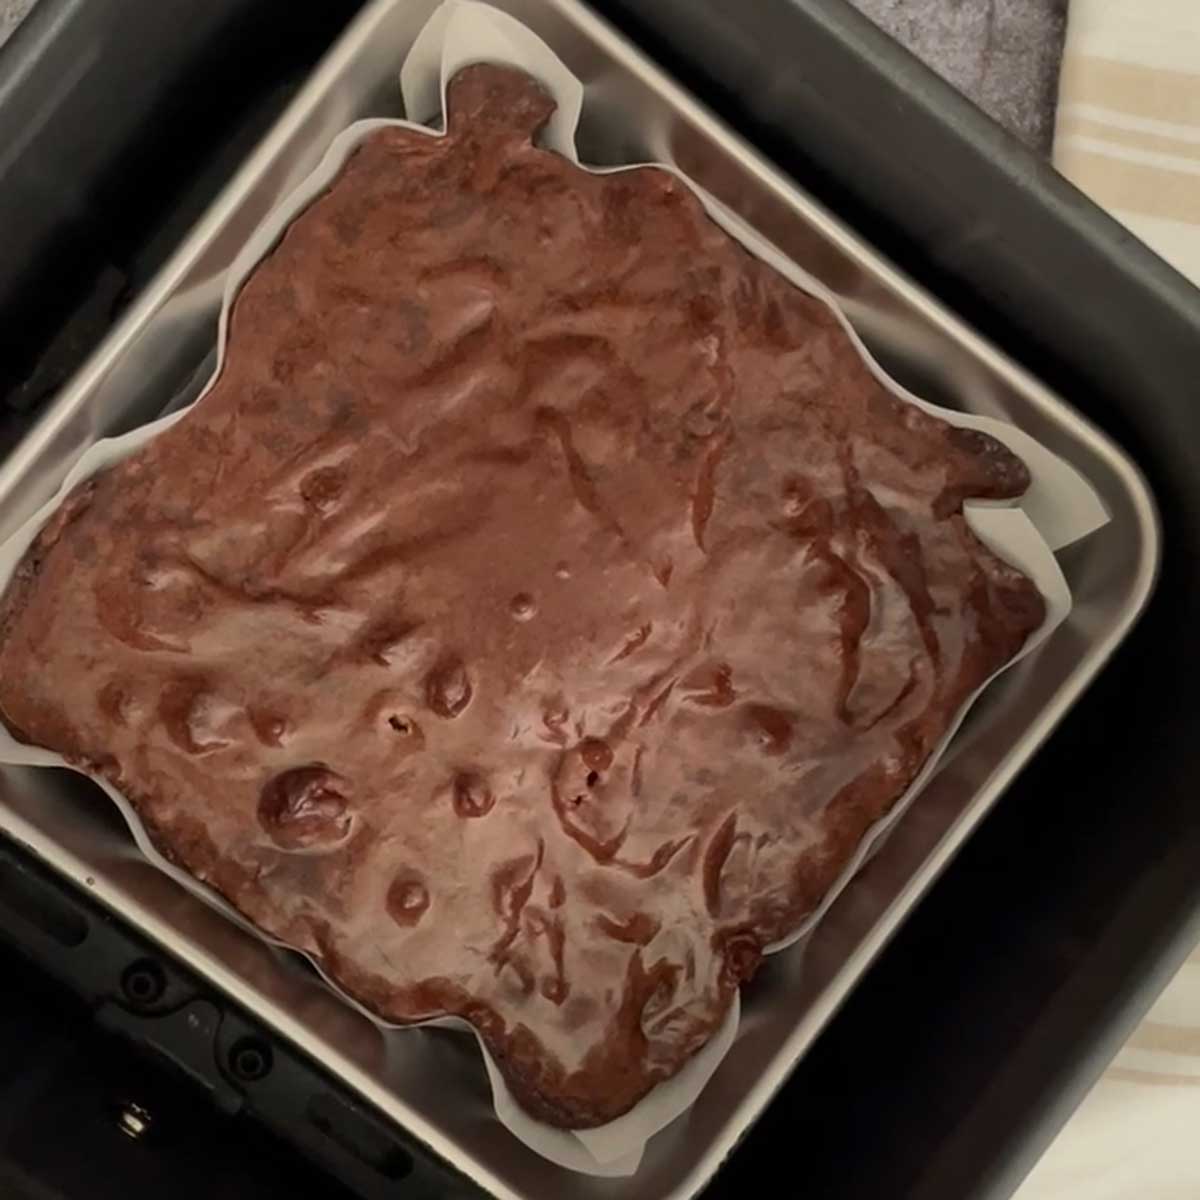 Brownie in air fryer pan.